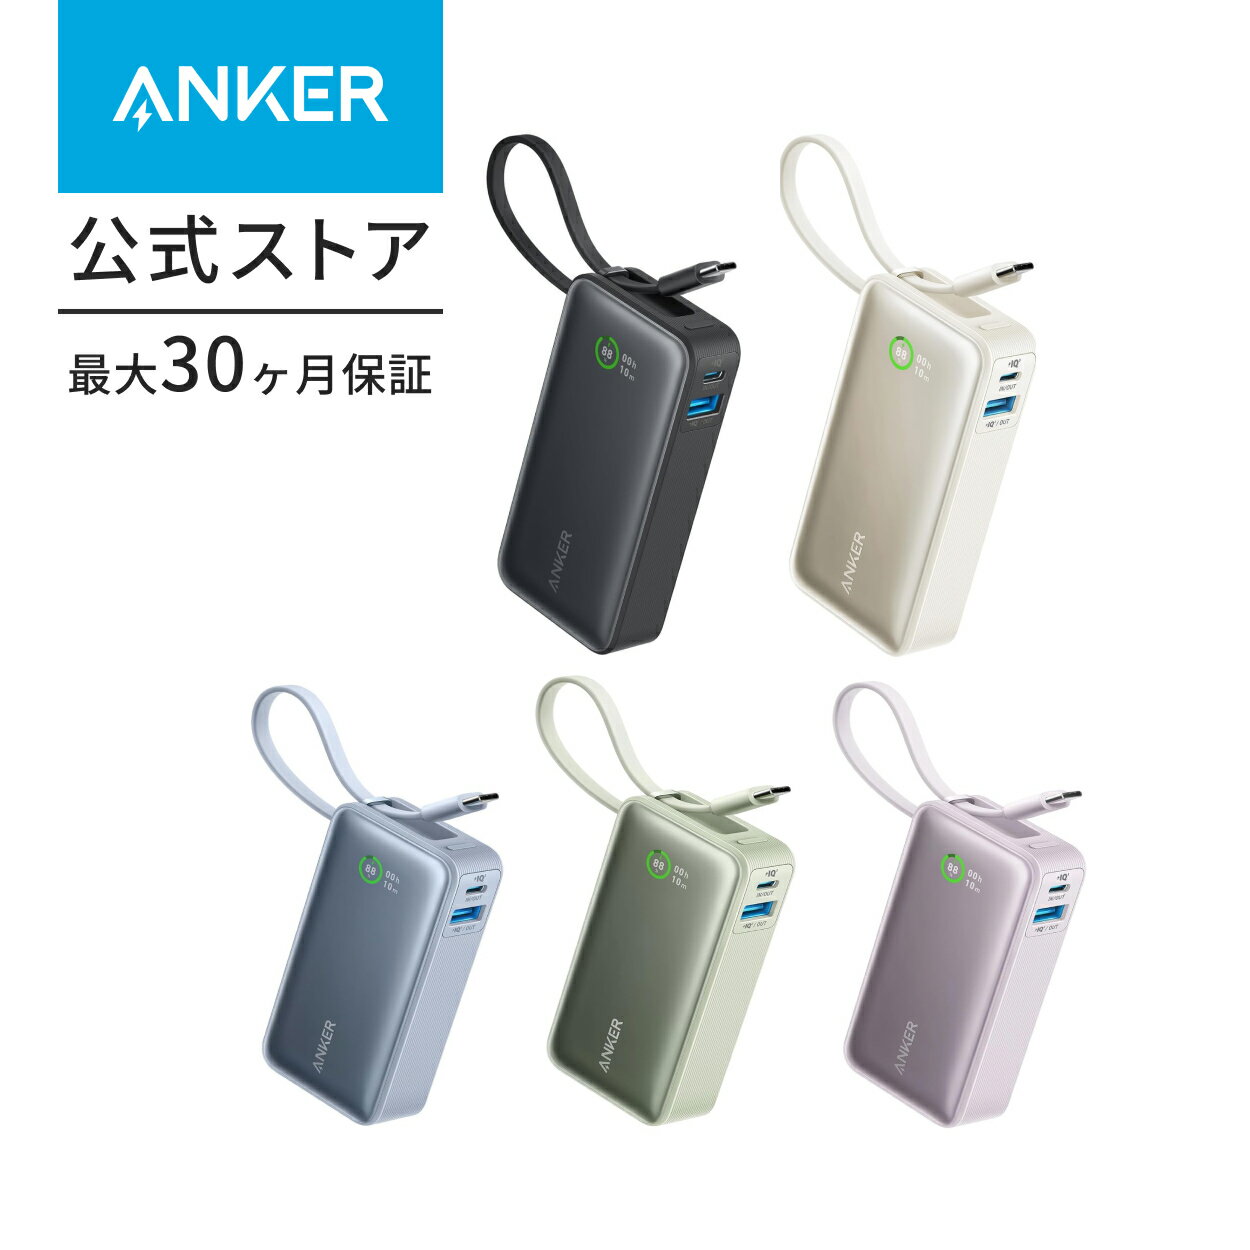 【1,300円OFF 5/16まで】【一部あす楽対応】Anker Nano Power Bank (30W, Built-In USB-C Cable) (モバイル...